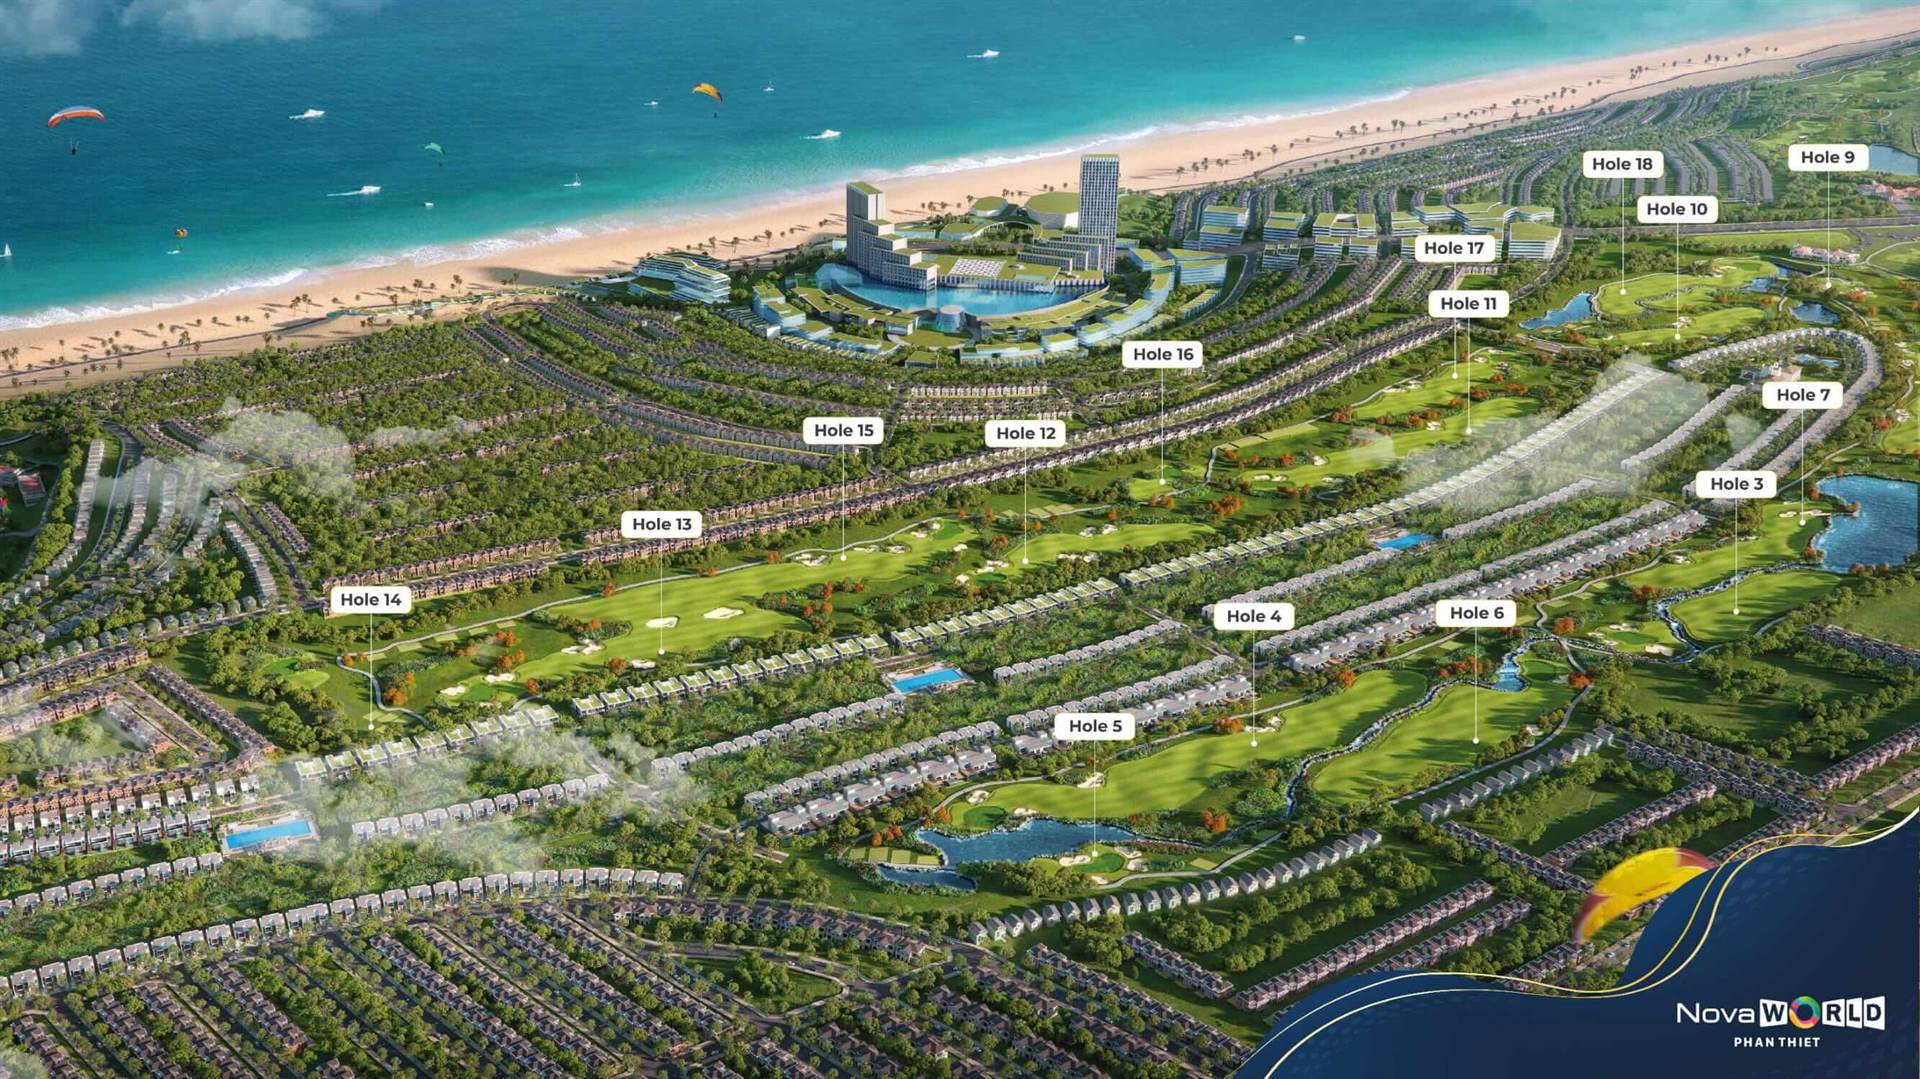 PGA Golf Villas Phan Thiết Biệt Thự Golf Tại Novaworld #2021